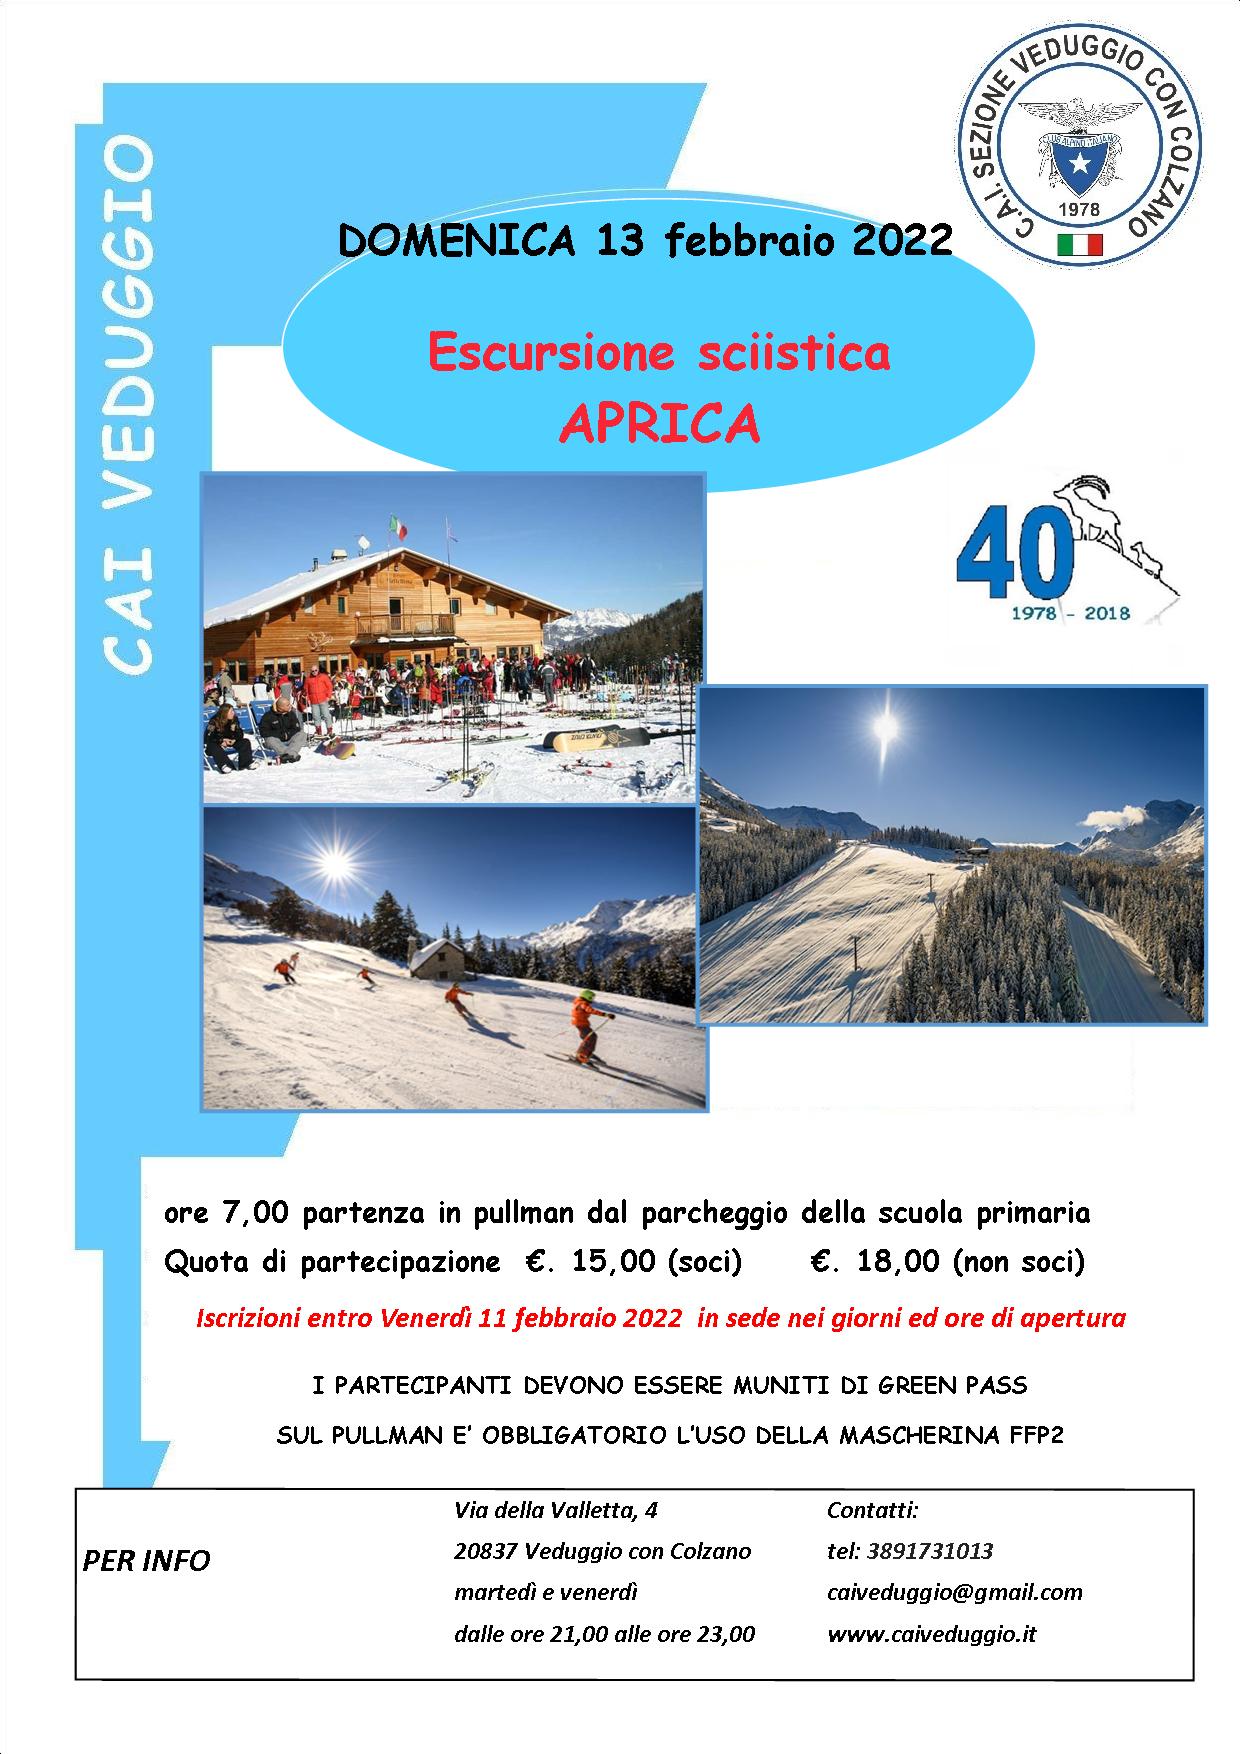 Domenica 13 febbraio 2022 – Con gli sci all’Aprica